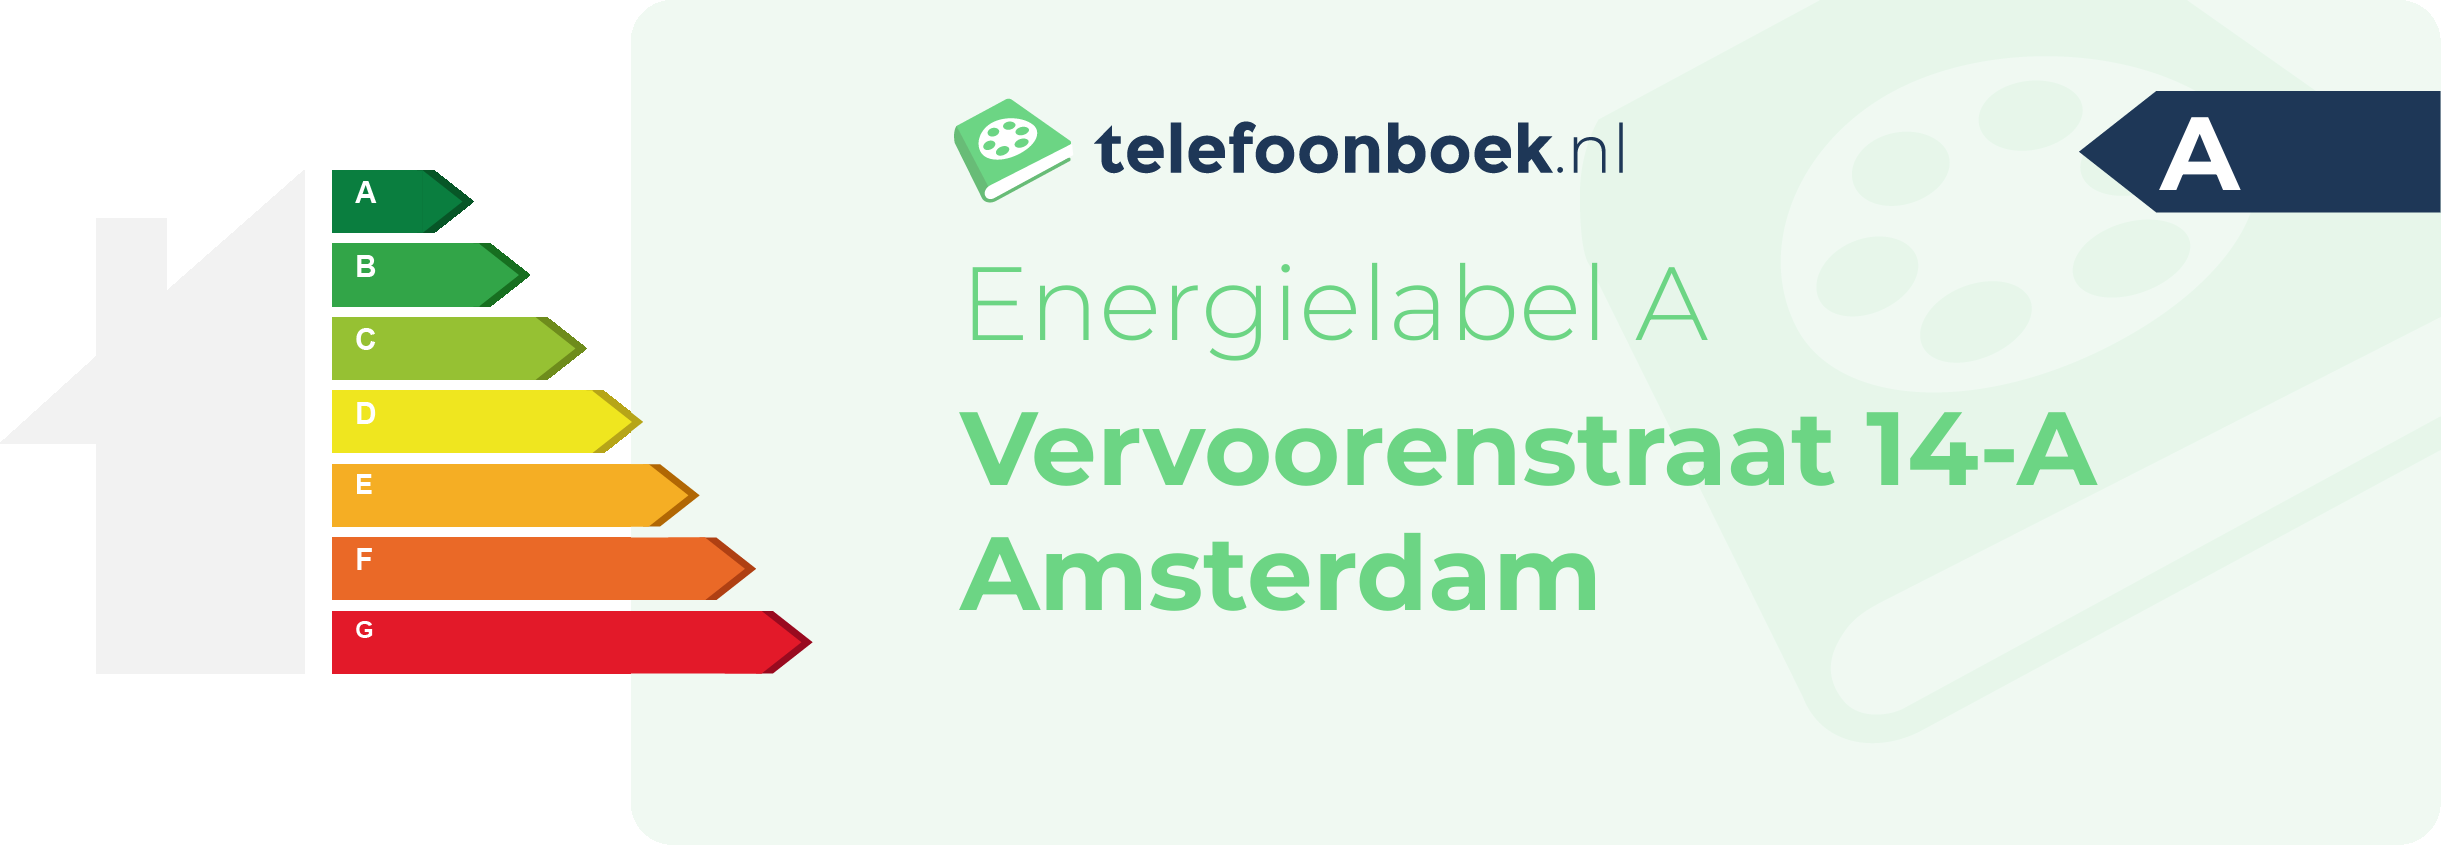 Energielabel Vervoorenstraat 14-A Amsterdam